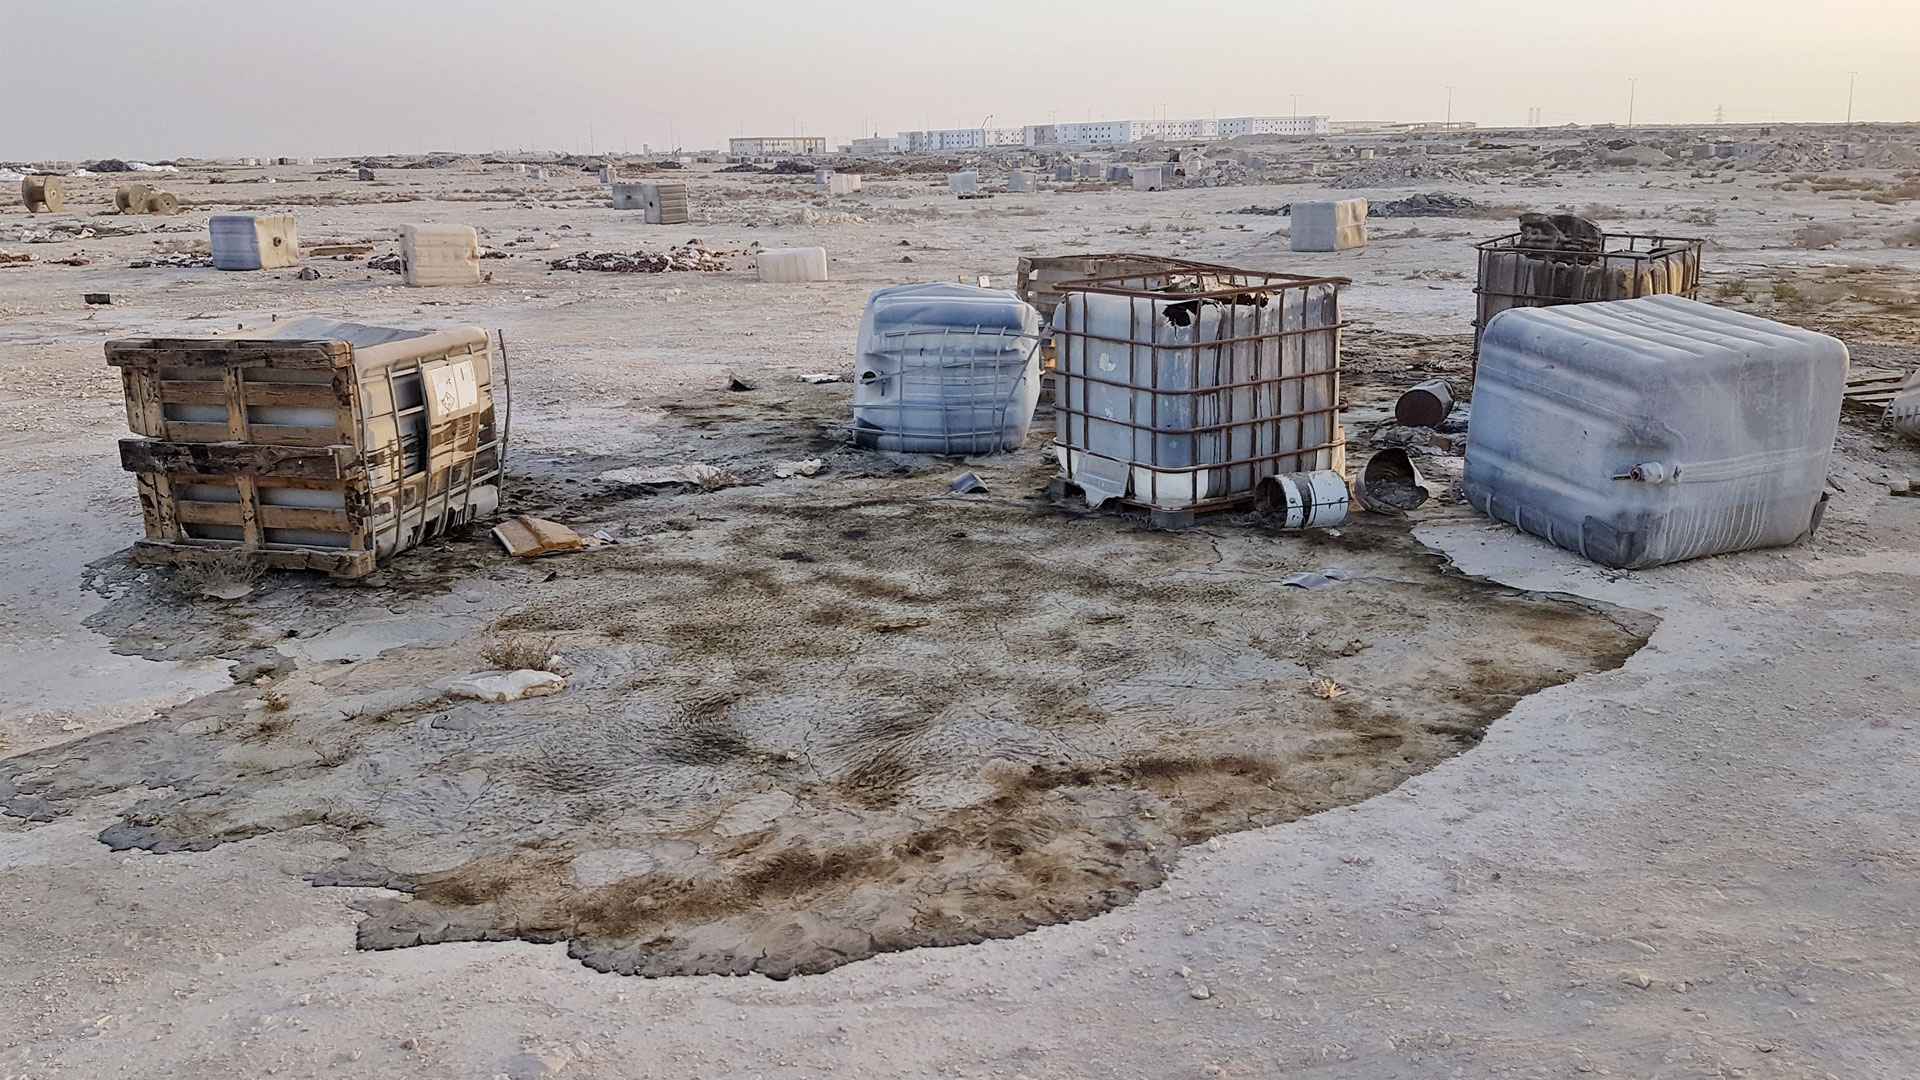 A Waste oil dumpsite in Aba Saleel